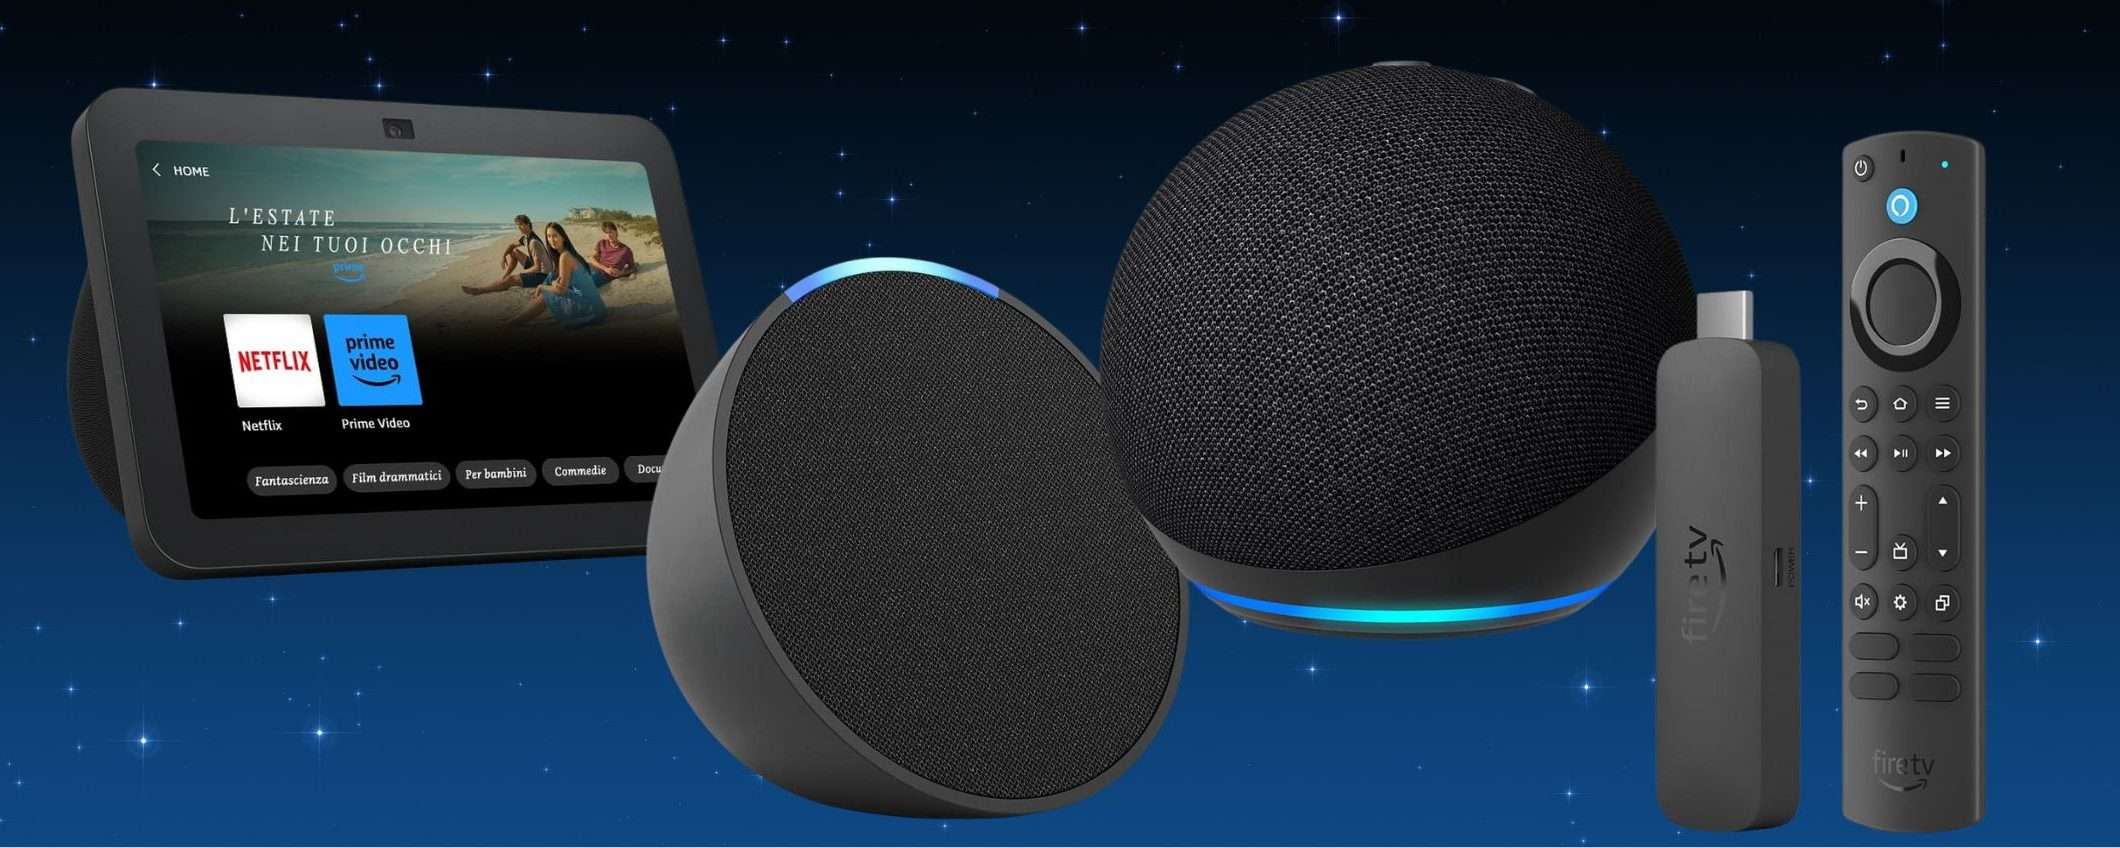 Tecnologia Amazon, FUORITUTTO SHOCK: Fire TV Stick, smart speaker e non solo